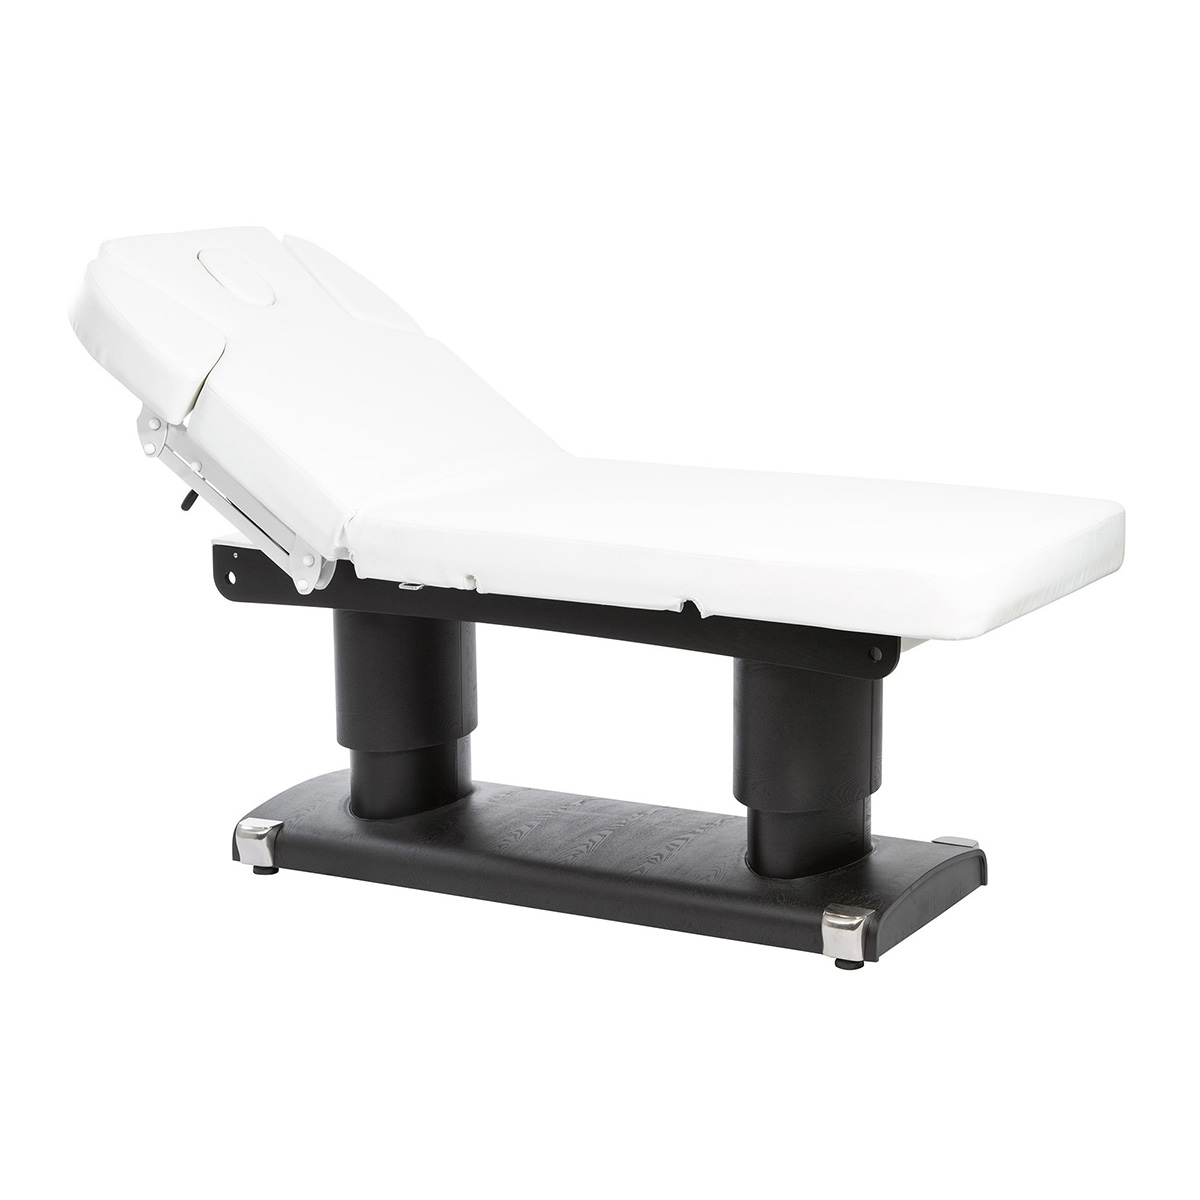 Qaus - Tables de massage - Mobicoiff